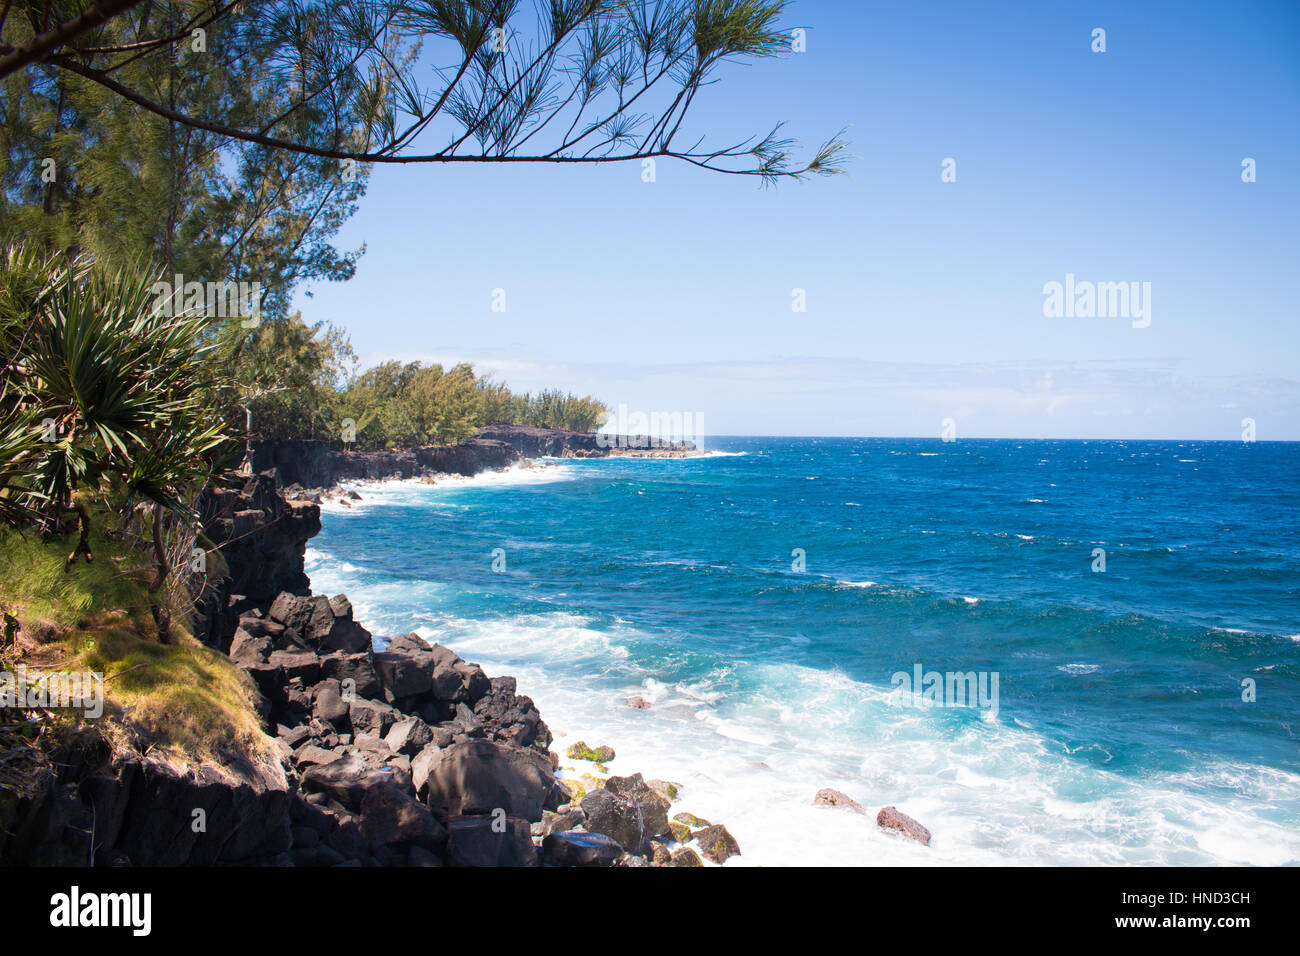 La isla de la Reunion acantilado litoral del océano índico y rocas Foto de stock